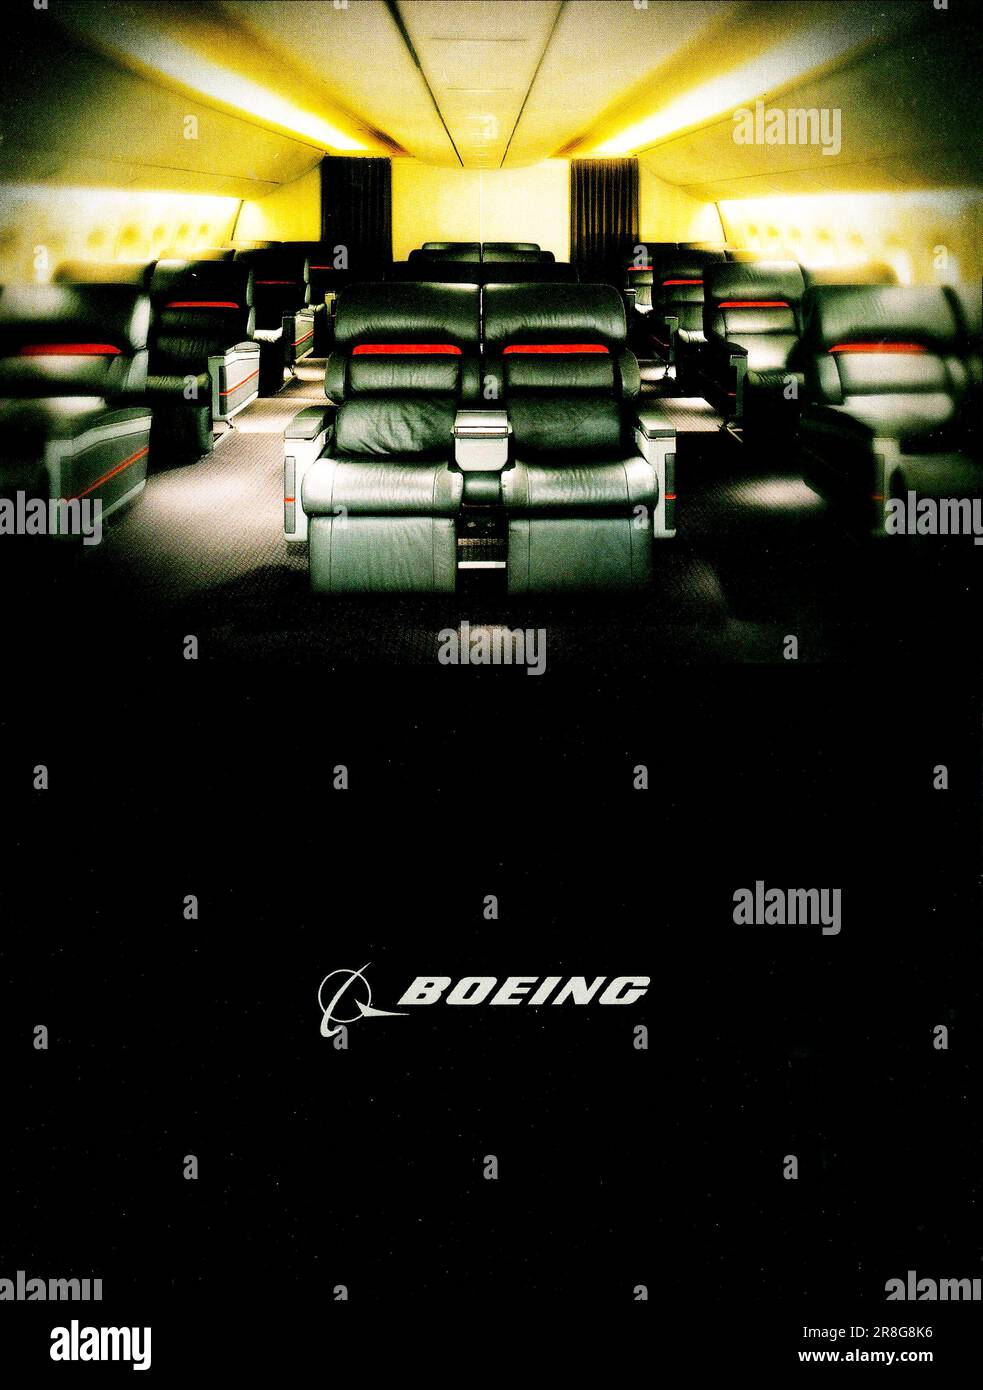 Boeing-Werbung in einer Zeitschrift 1999 Stockfoto